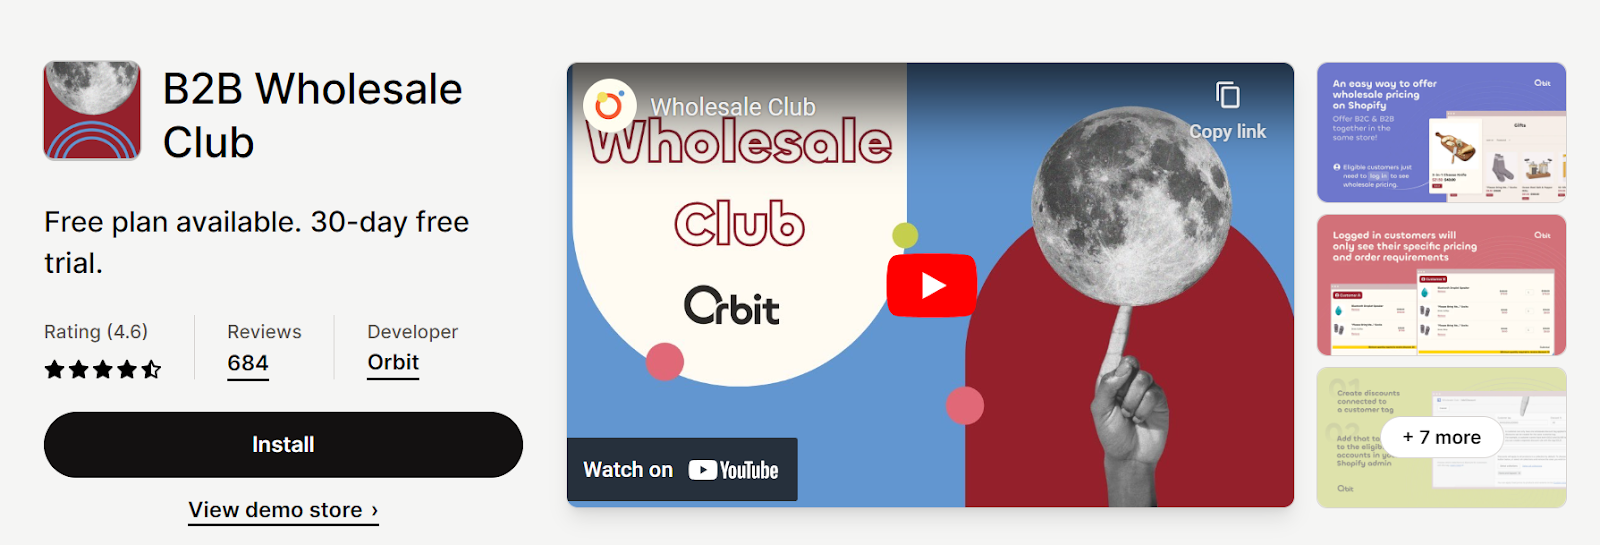 B2B wholesale club